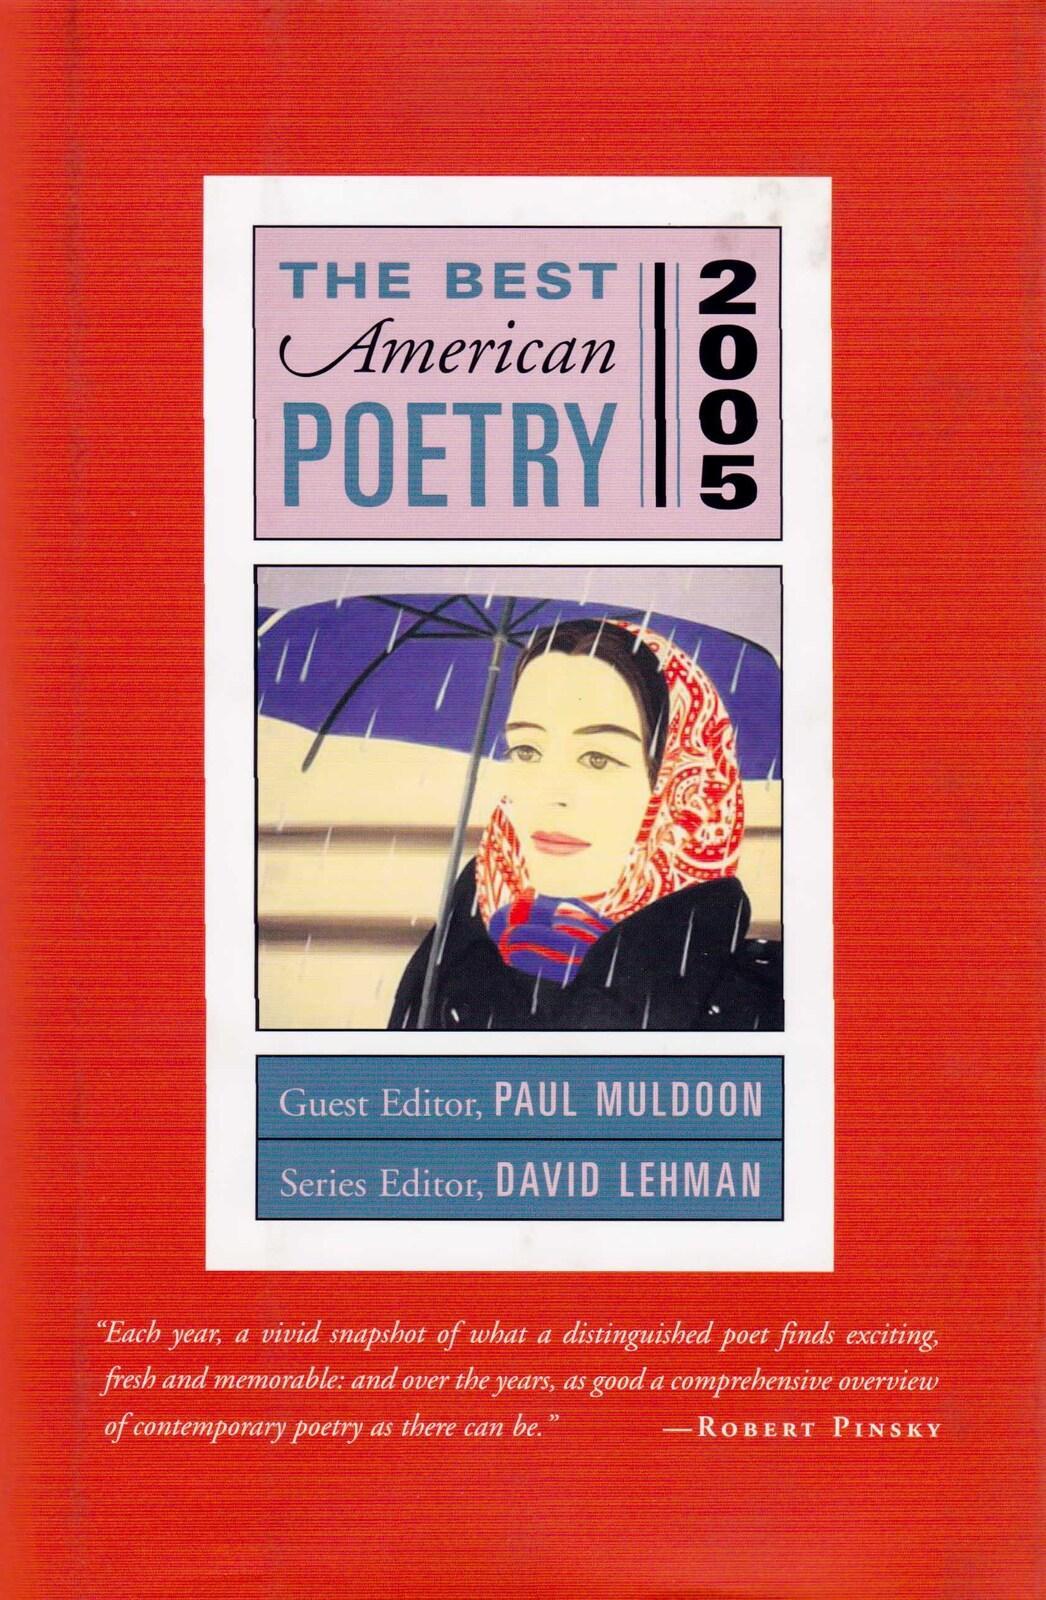 The Best American Poetry 2005: Series Editor David Lehman Hardcover Book